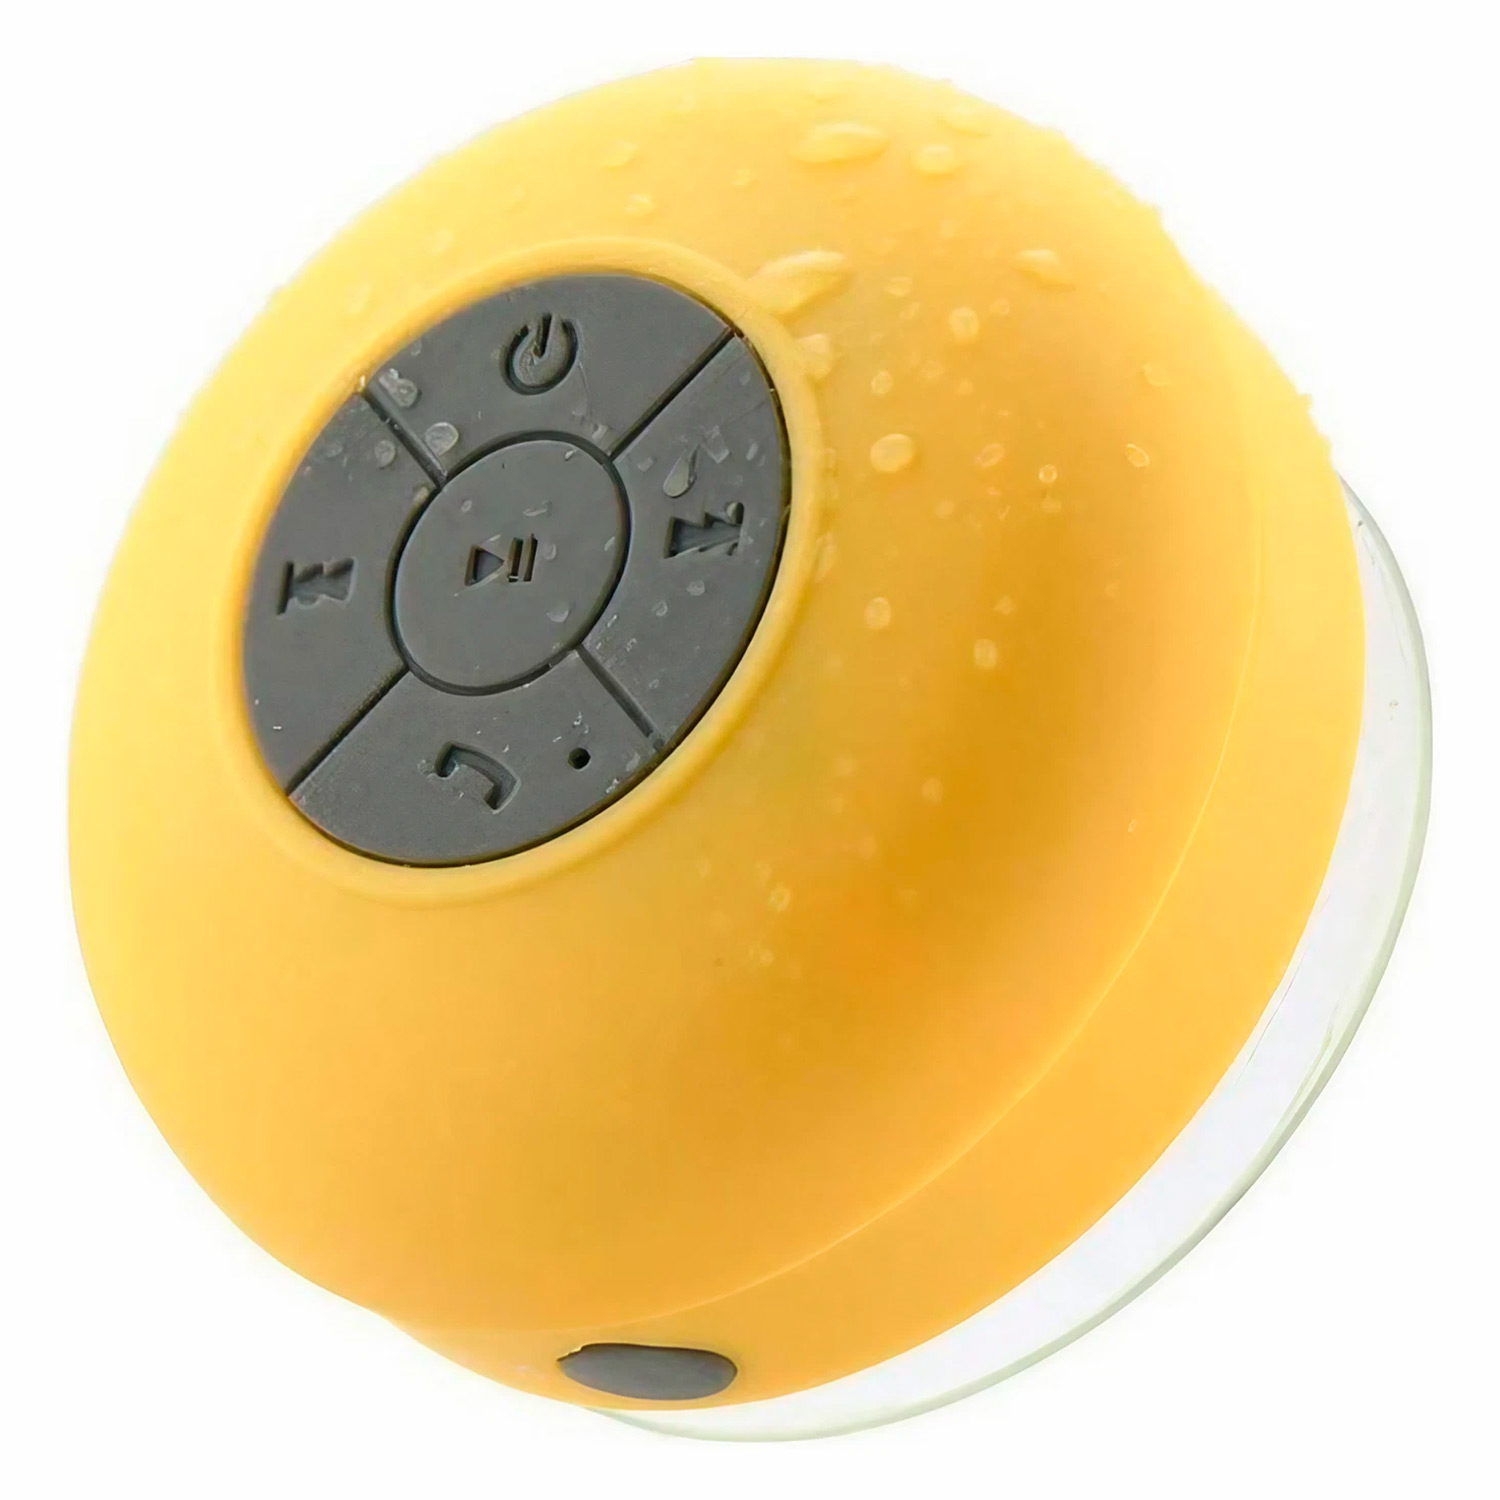 Speaker Portátil BTS-06 Bluetooth - Amarelo